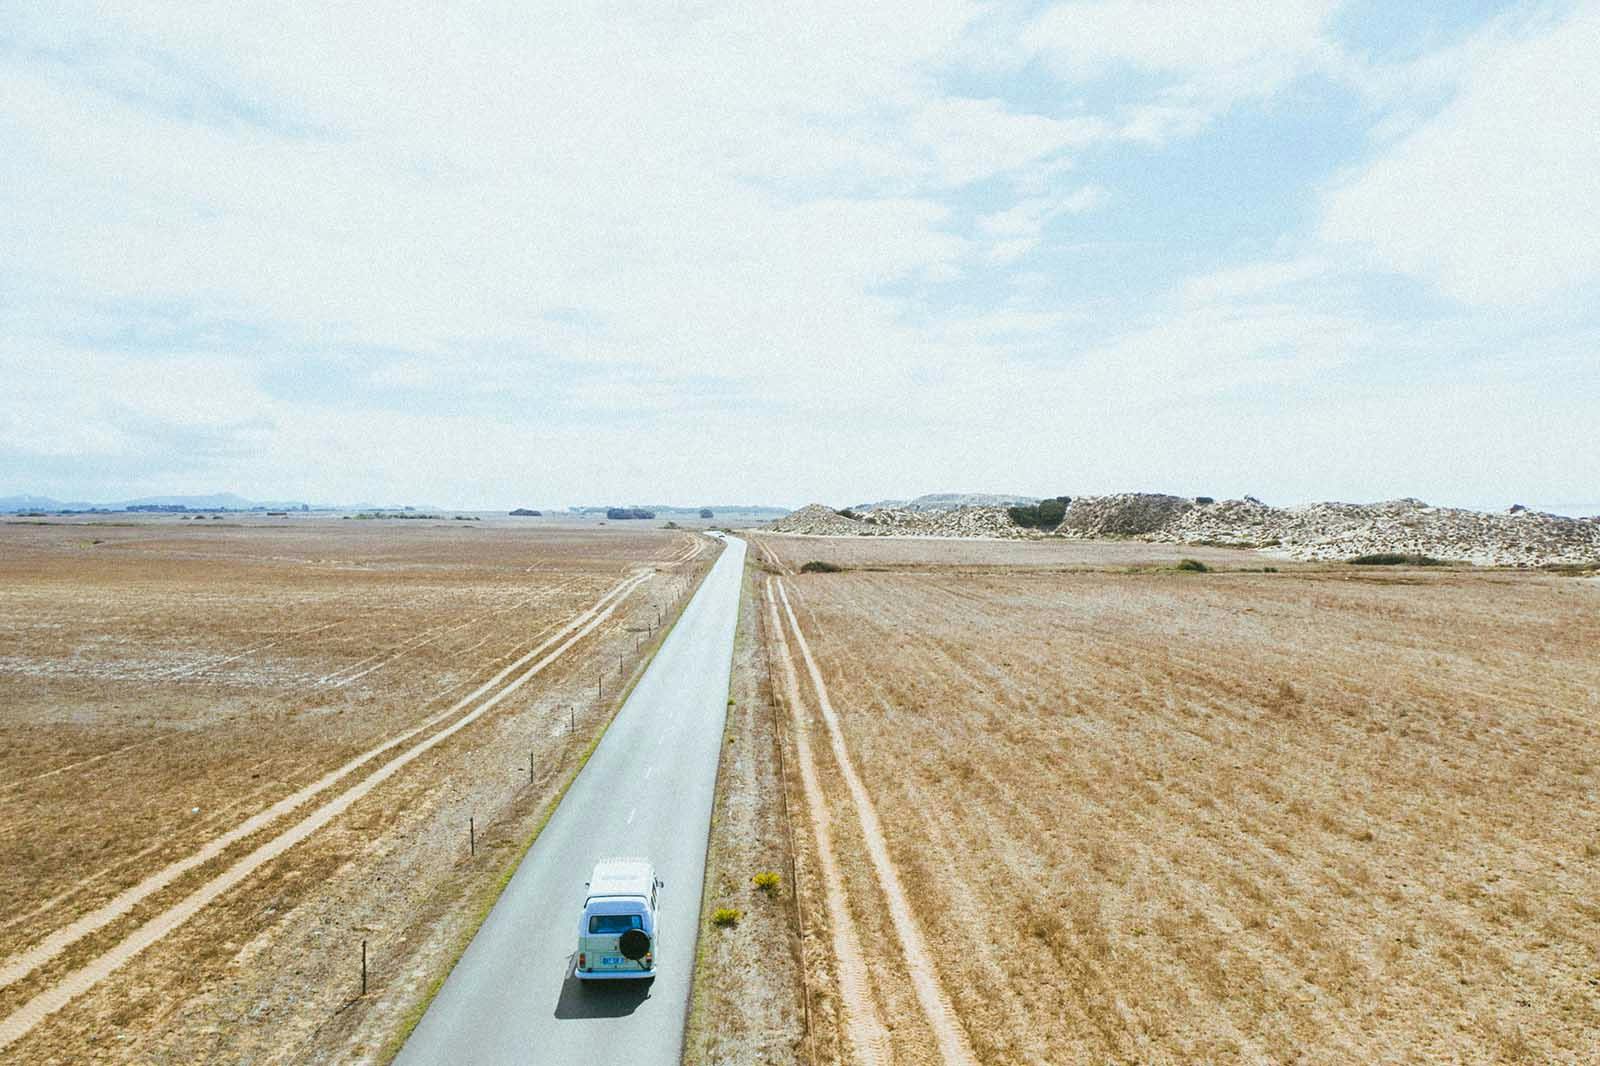 Uma pao de forma VW kombi vintage a percorrer uma estrada deserta em Portugal.